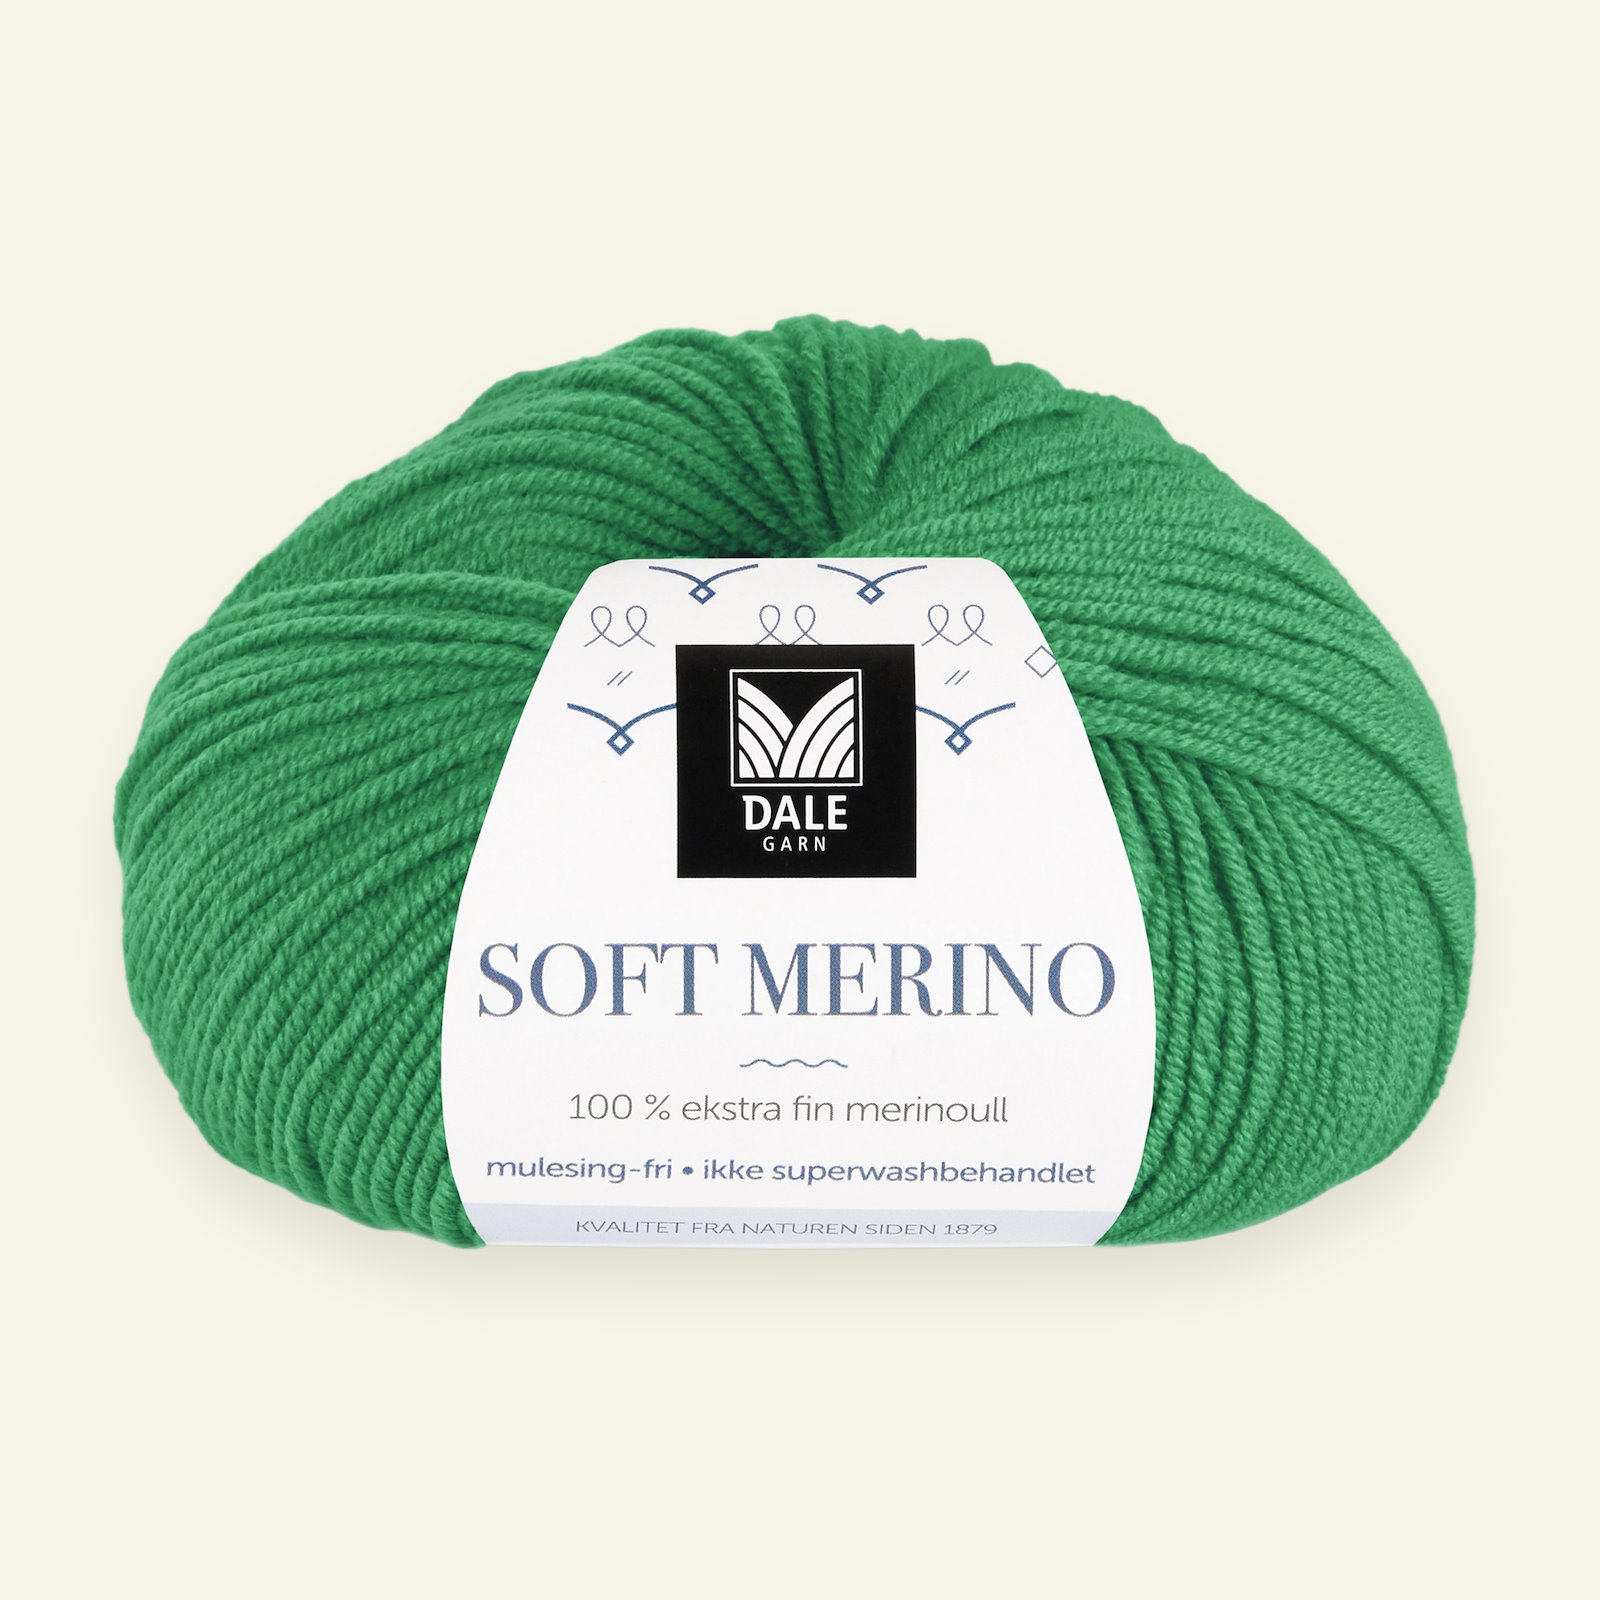 Dale Garn, 100% Extrafeine Merino-Wolle "Soft Merino", grün (3030) 90000351_pack